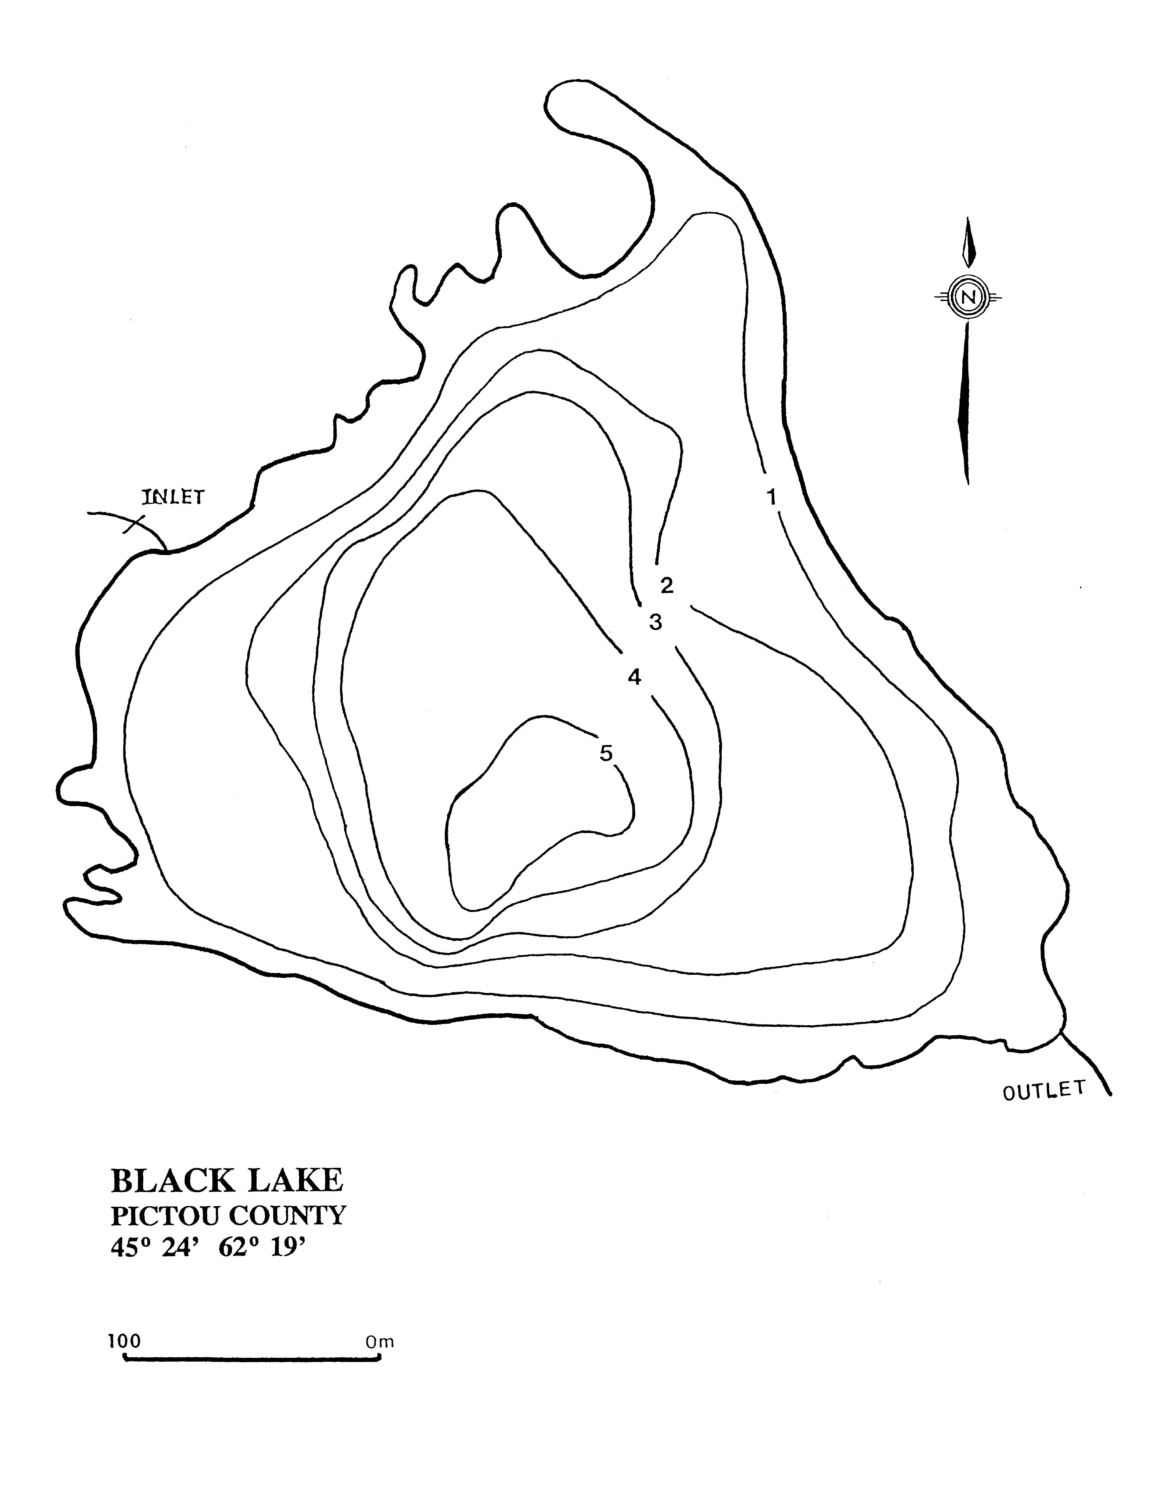 Black Lake - Pictou County Lake Maps